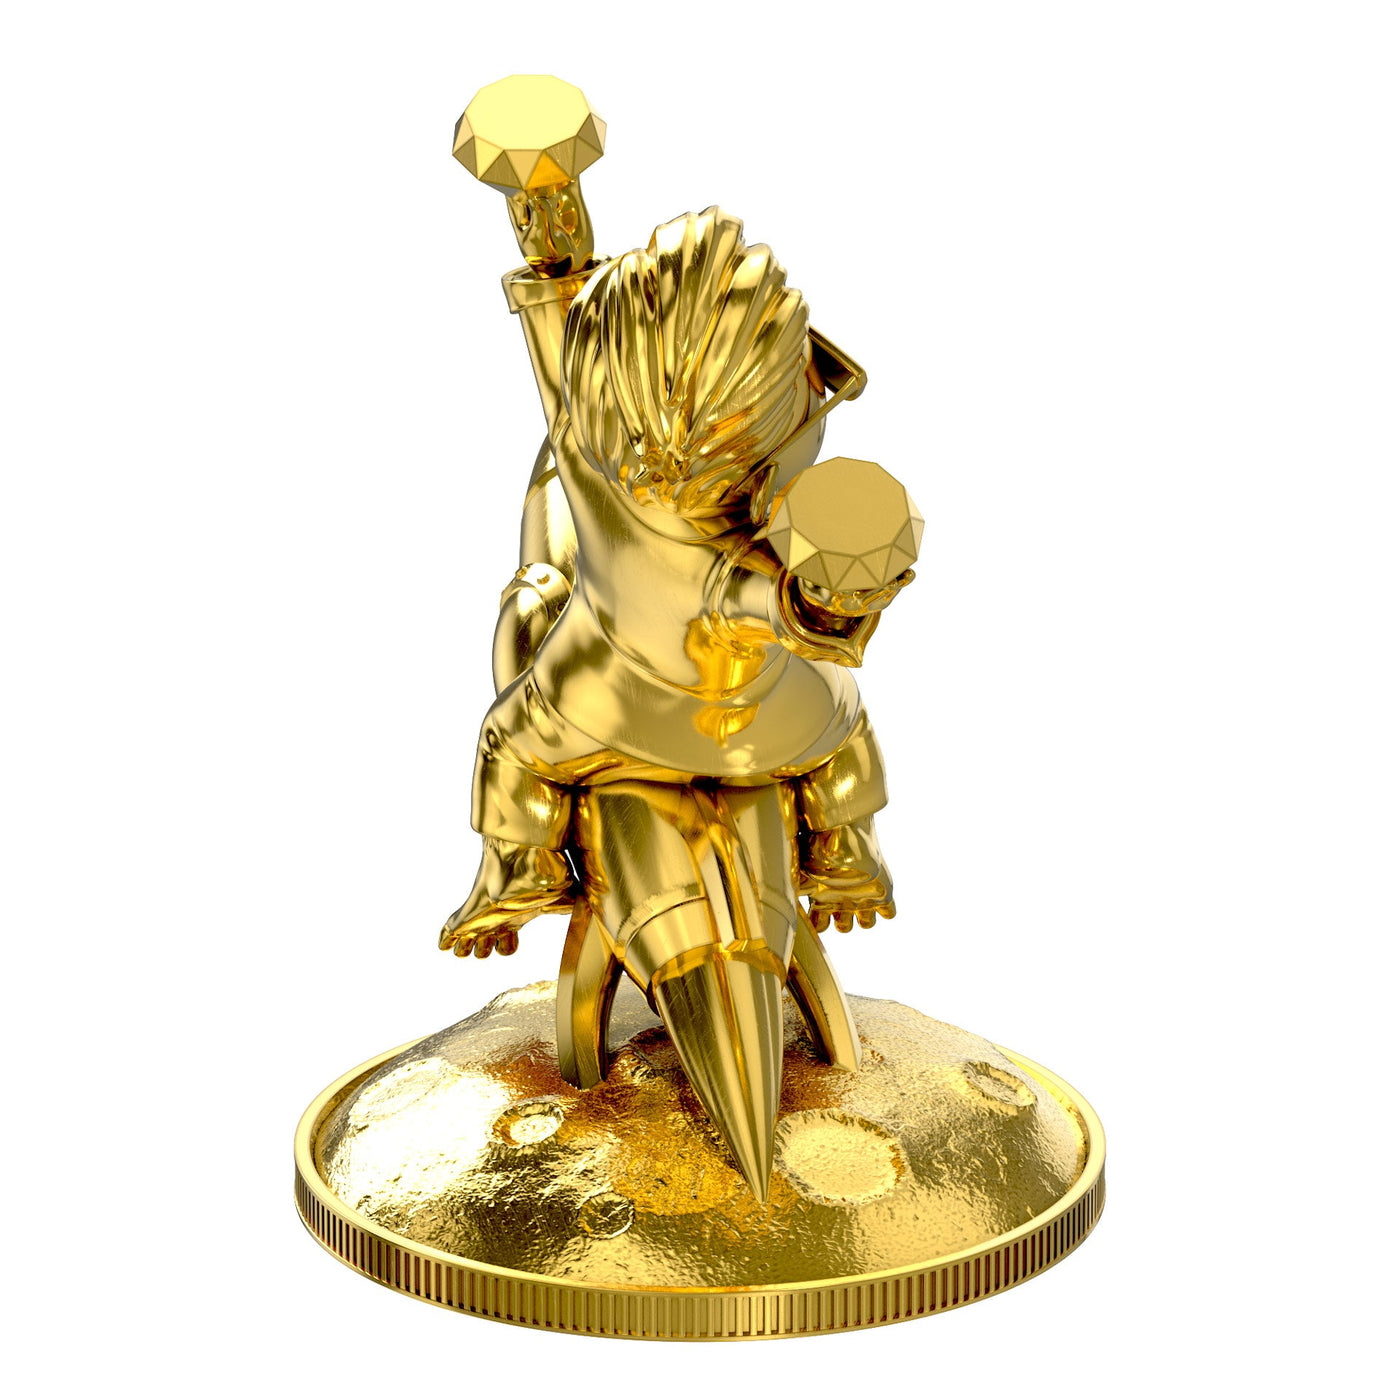 WSB Wall Street Bets Half Kilo Gold Statue - SilverStatues.com